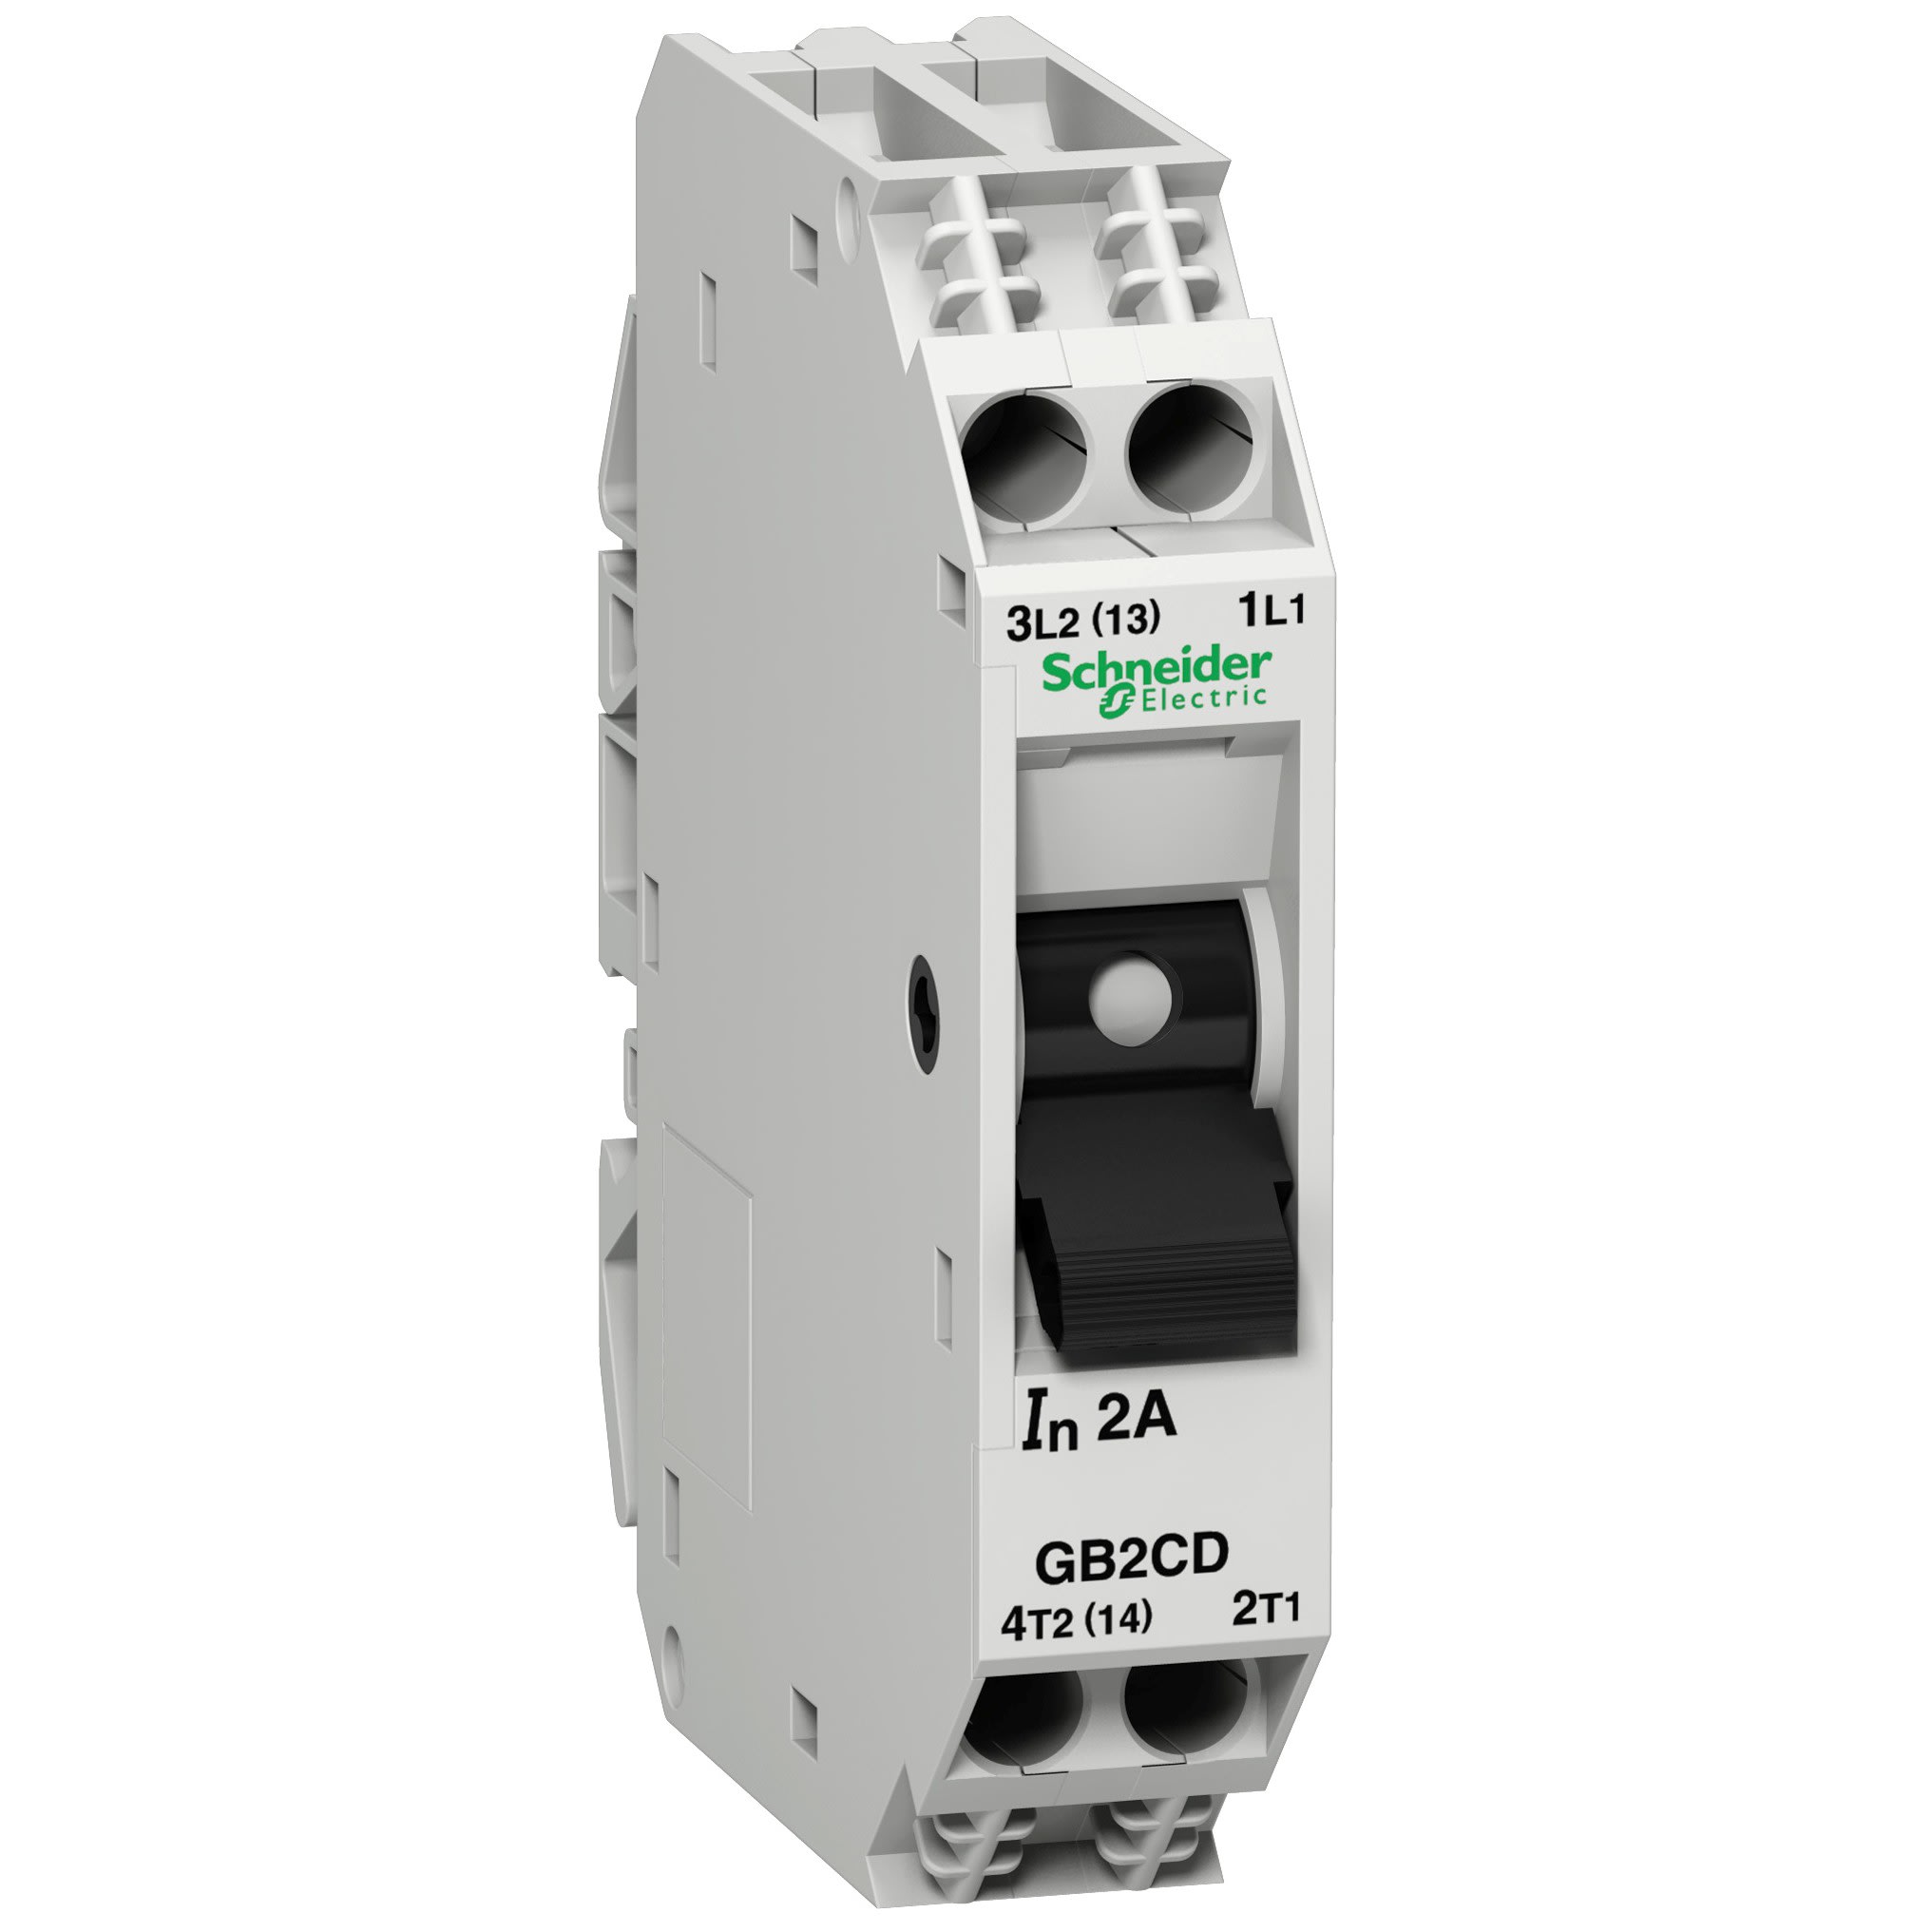 Schneider Electric - TeSys GB2-CD - disjoncteur pour circuit de controle - 2A - 1P+N - 1d